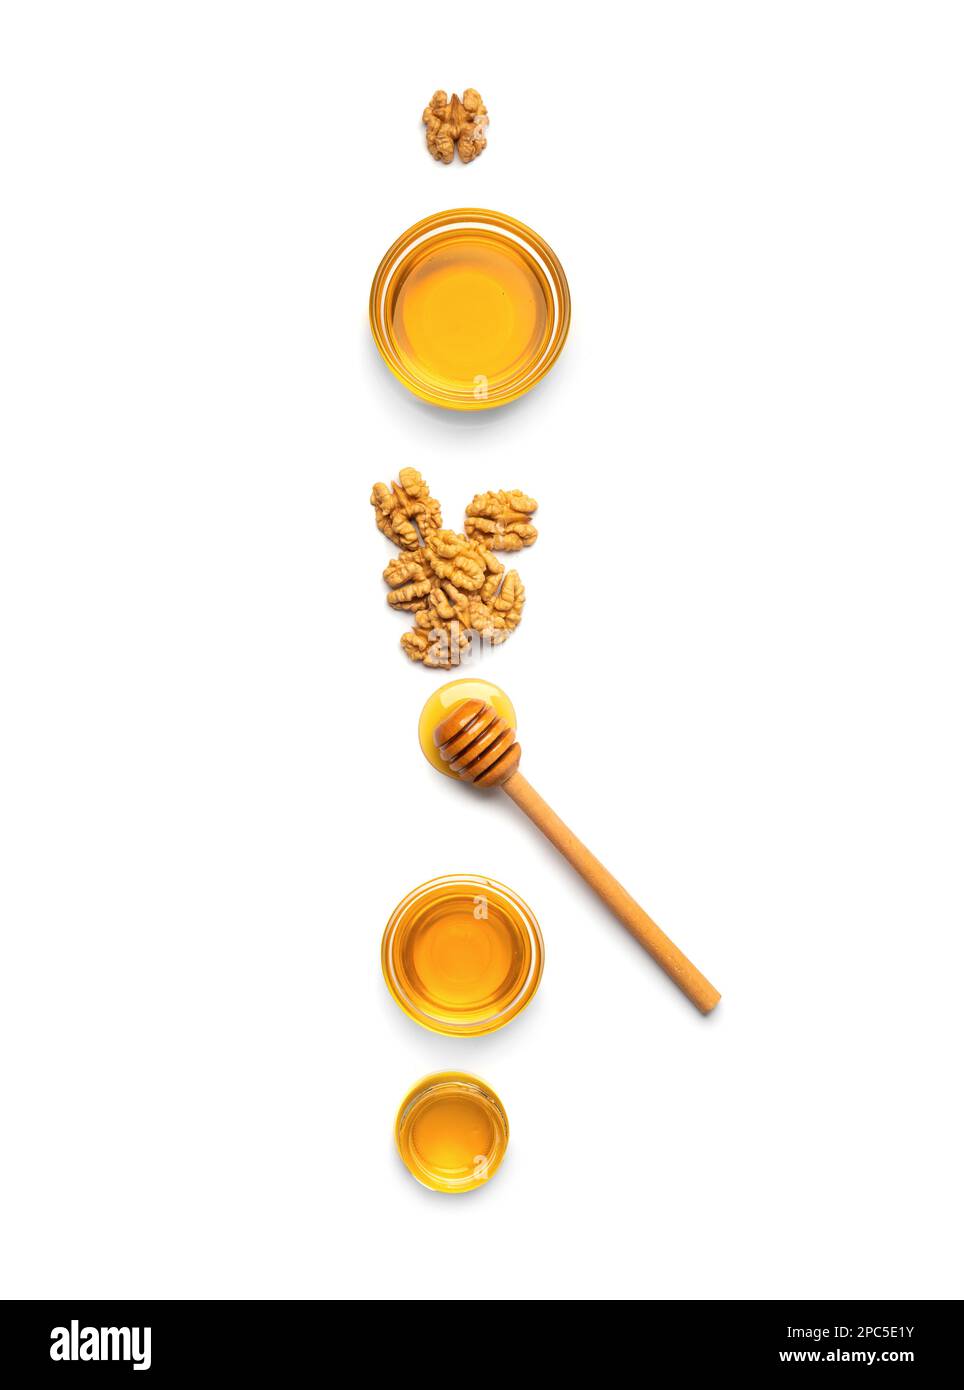 Pots en verre avec miel, noix et un bâton pour miel sur fond blanc. Composition du miel et des noix isolées. Une alimentation saine. Produits biologiques. Banque D'Images